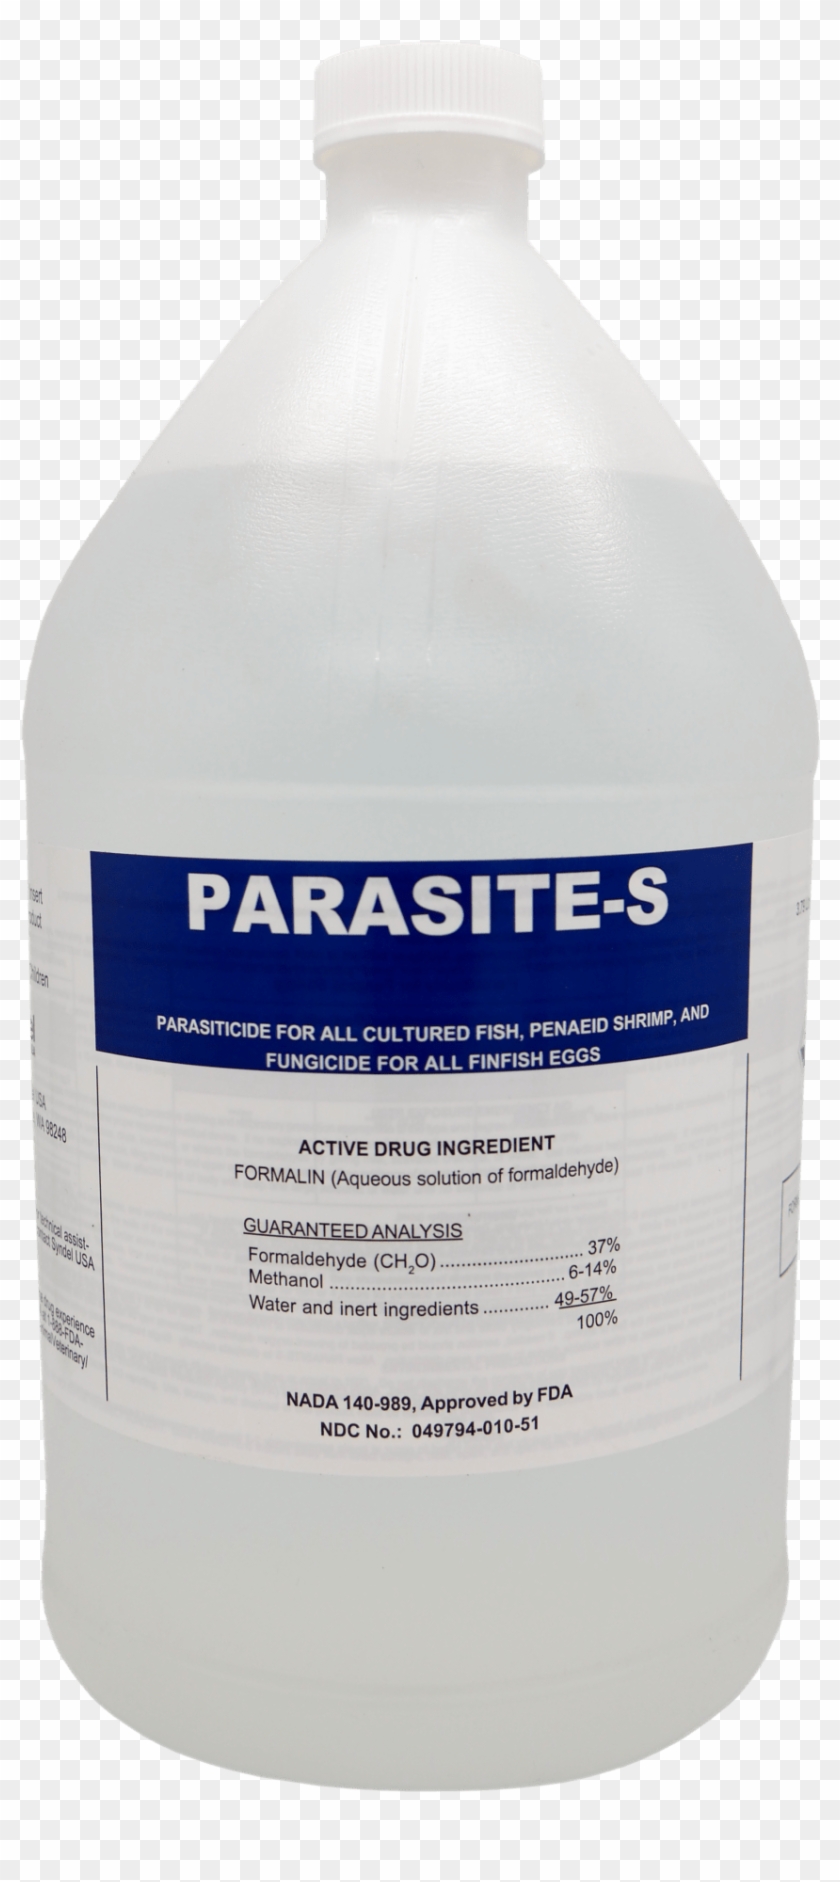 Parasite-s - Pure Nac Clipart #3821477